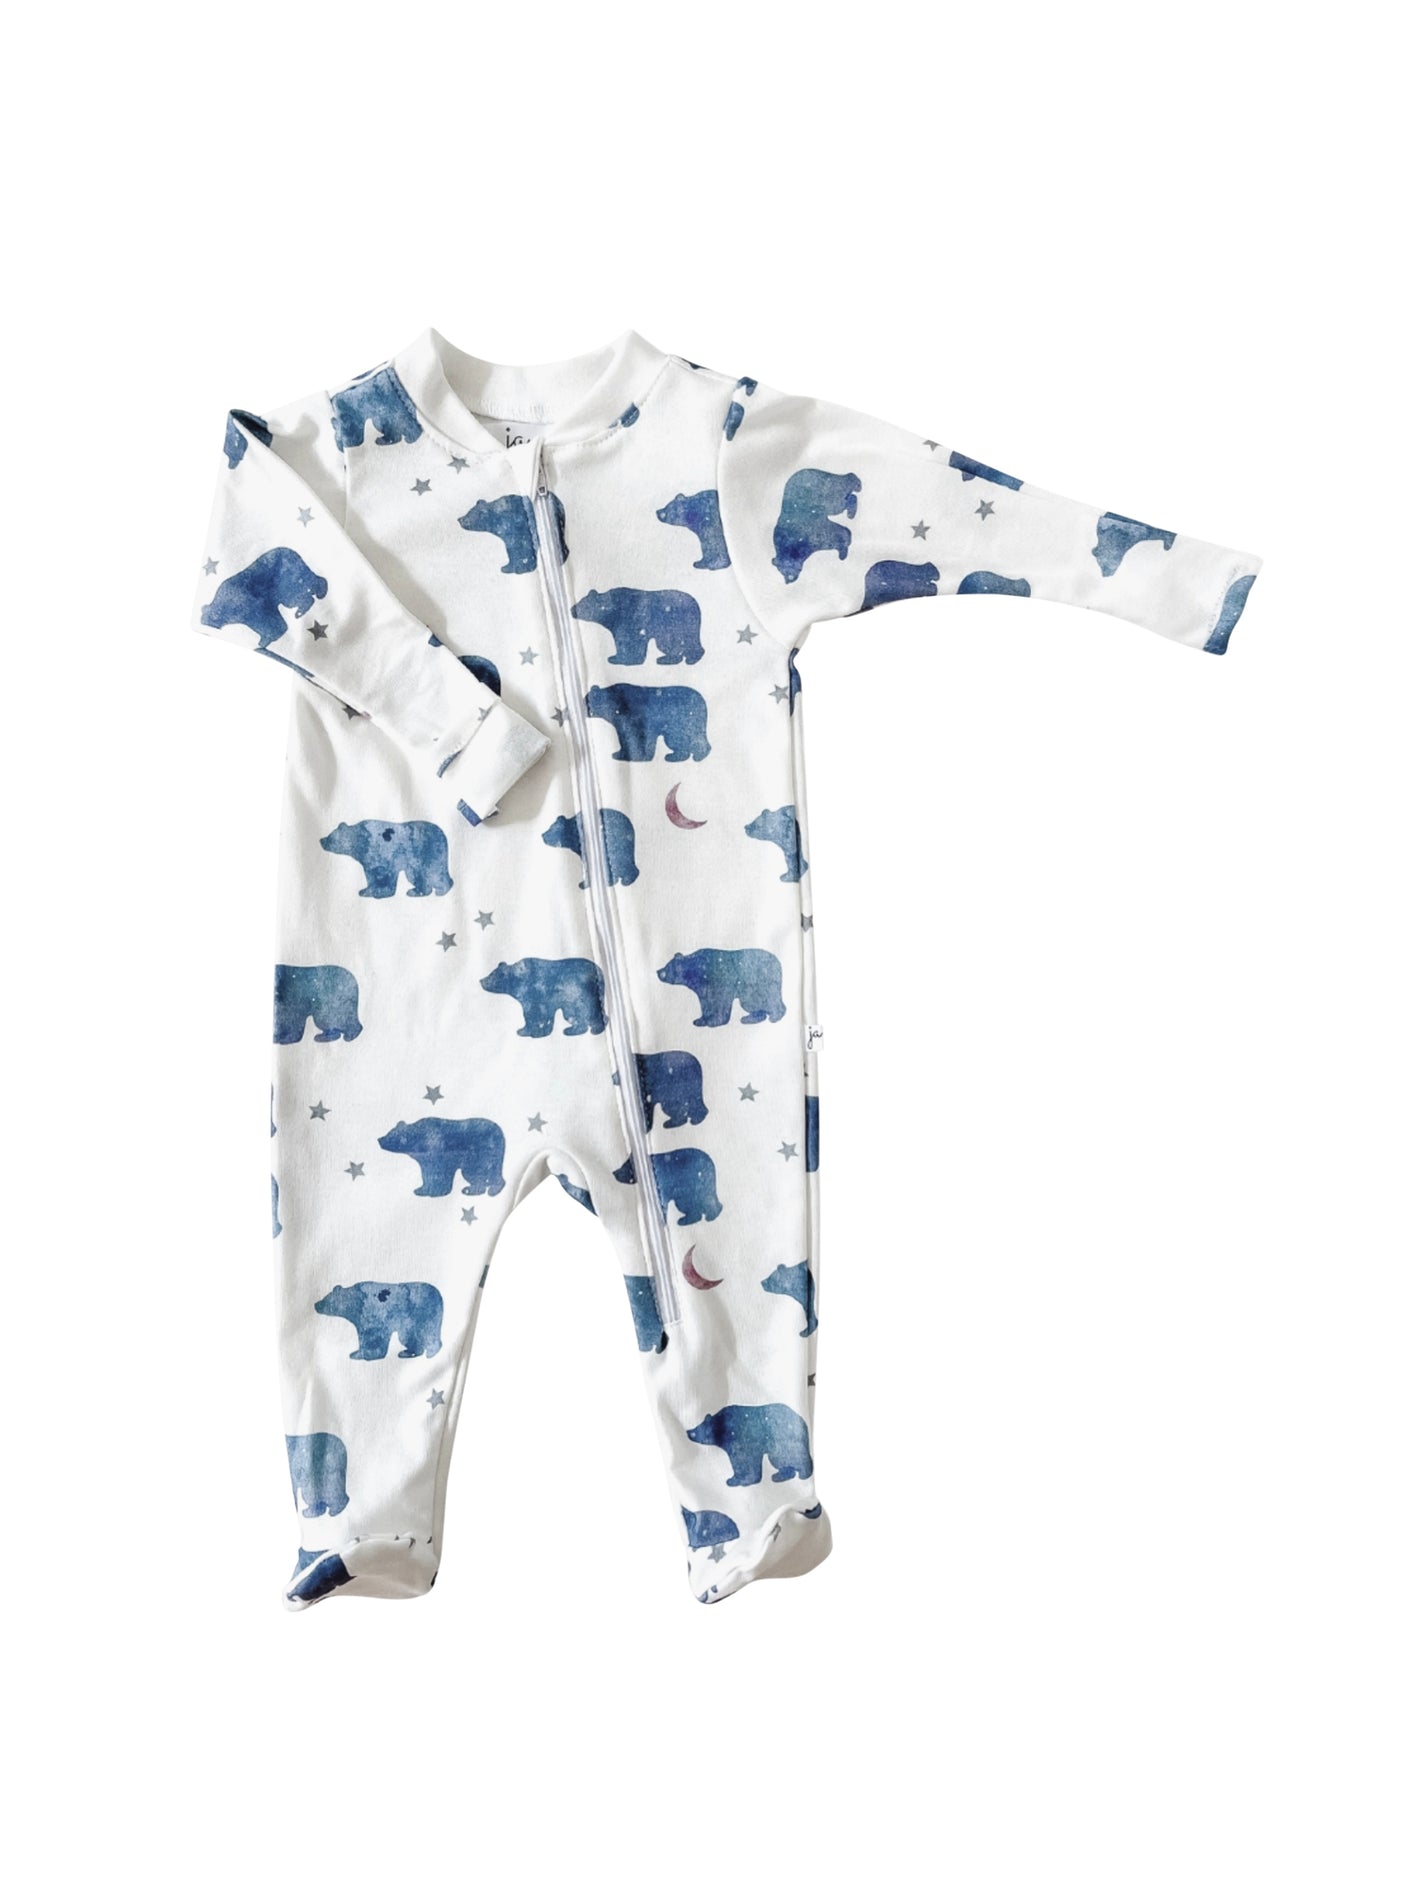 Shop the Polar Bear Organic Footie Pajamas at Weston Table